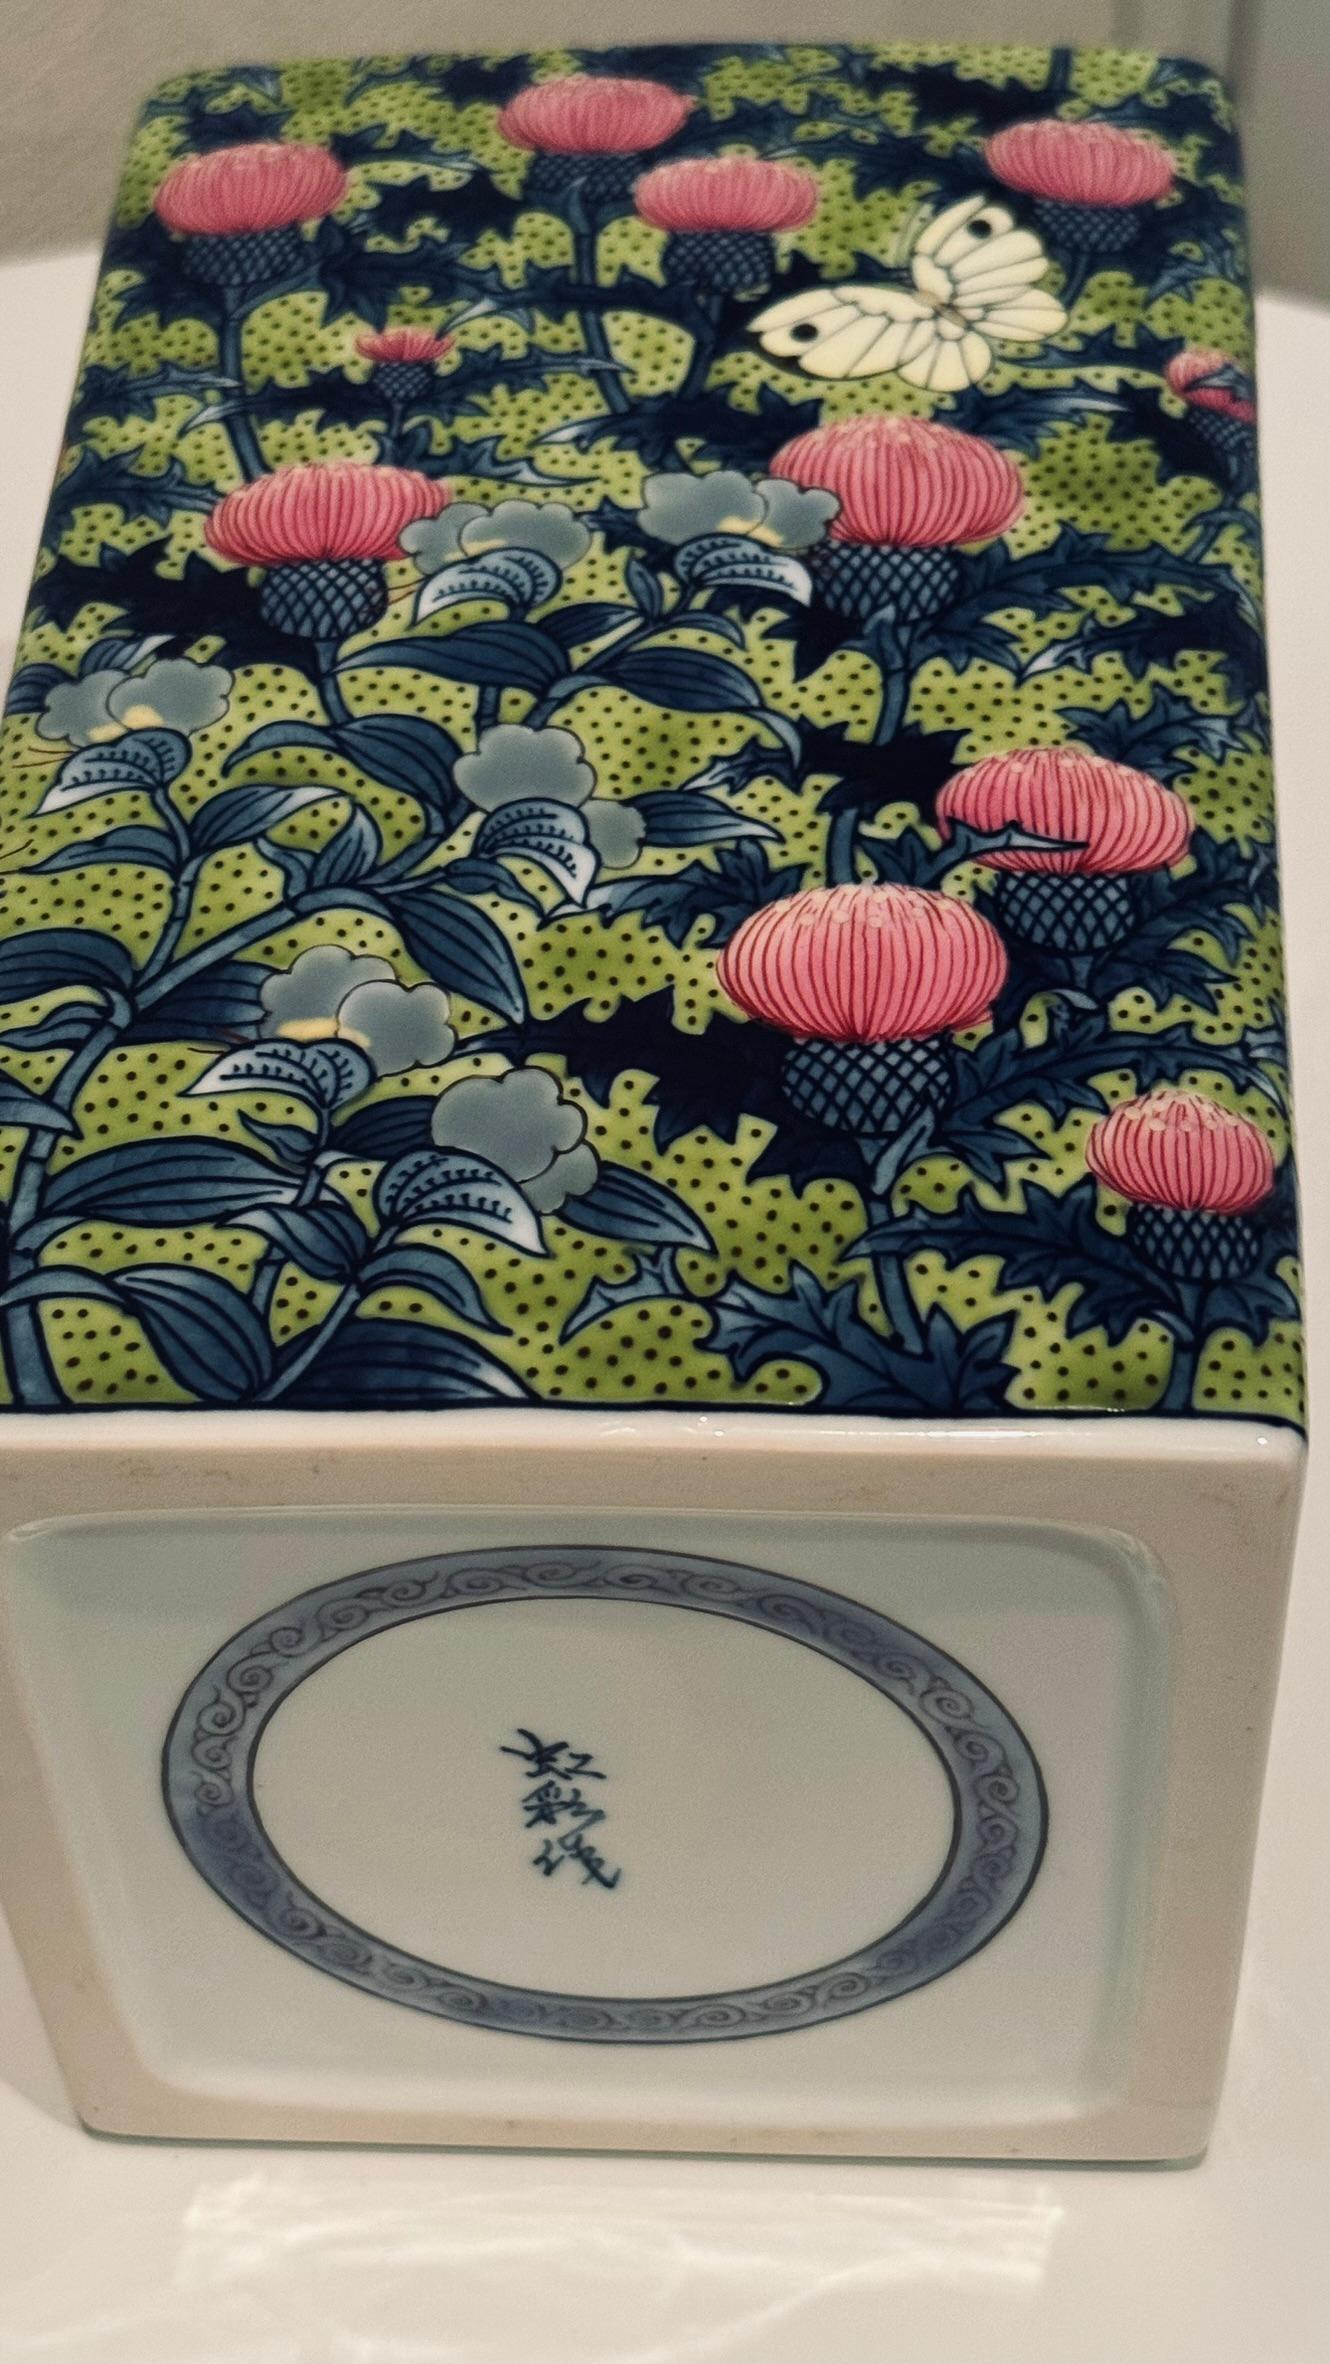 Diese außergewöhnliche zeitgenössische japanische Porzellanvase in Museumsqualität zeigt ein Beet mit Distelpflanzen und -blumen - ein traditionelles Motiv der Imari Arita-Porzellankunst. Der gelegentliche Schmetterling, der von der frühsommerlichen